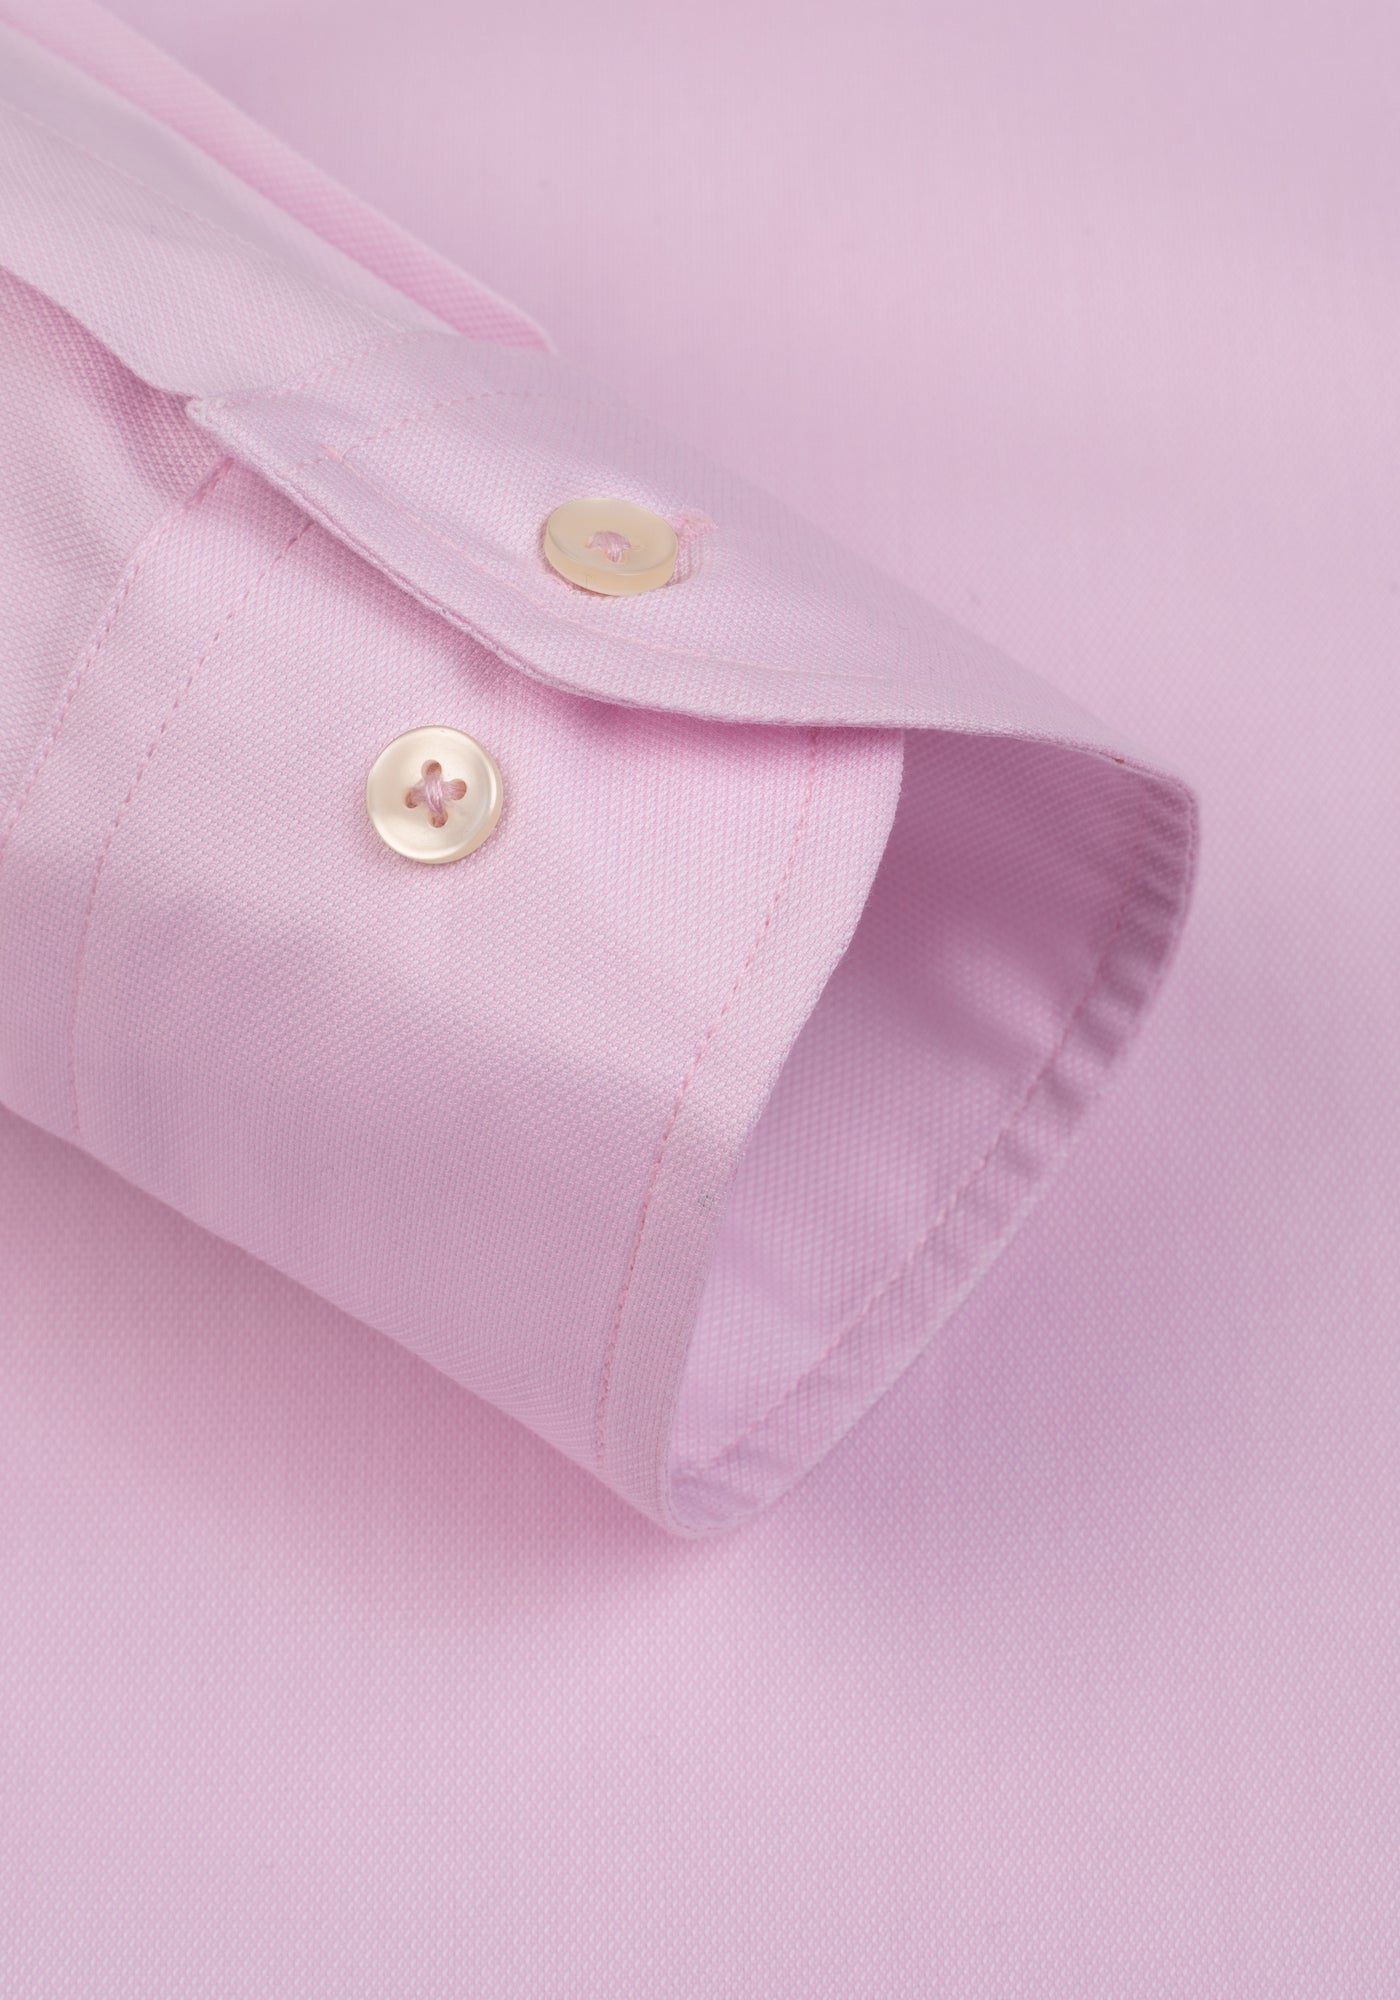 Pastel Pink Washed Oxford Shirt